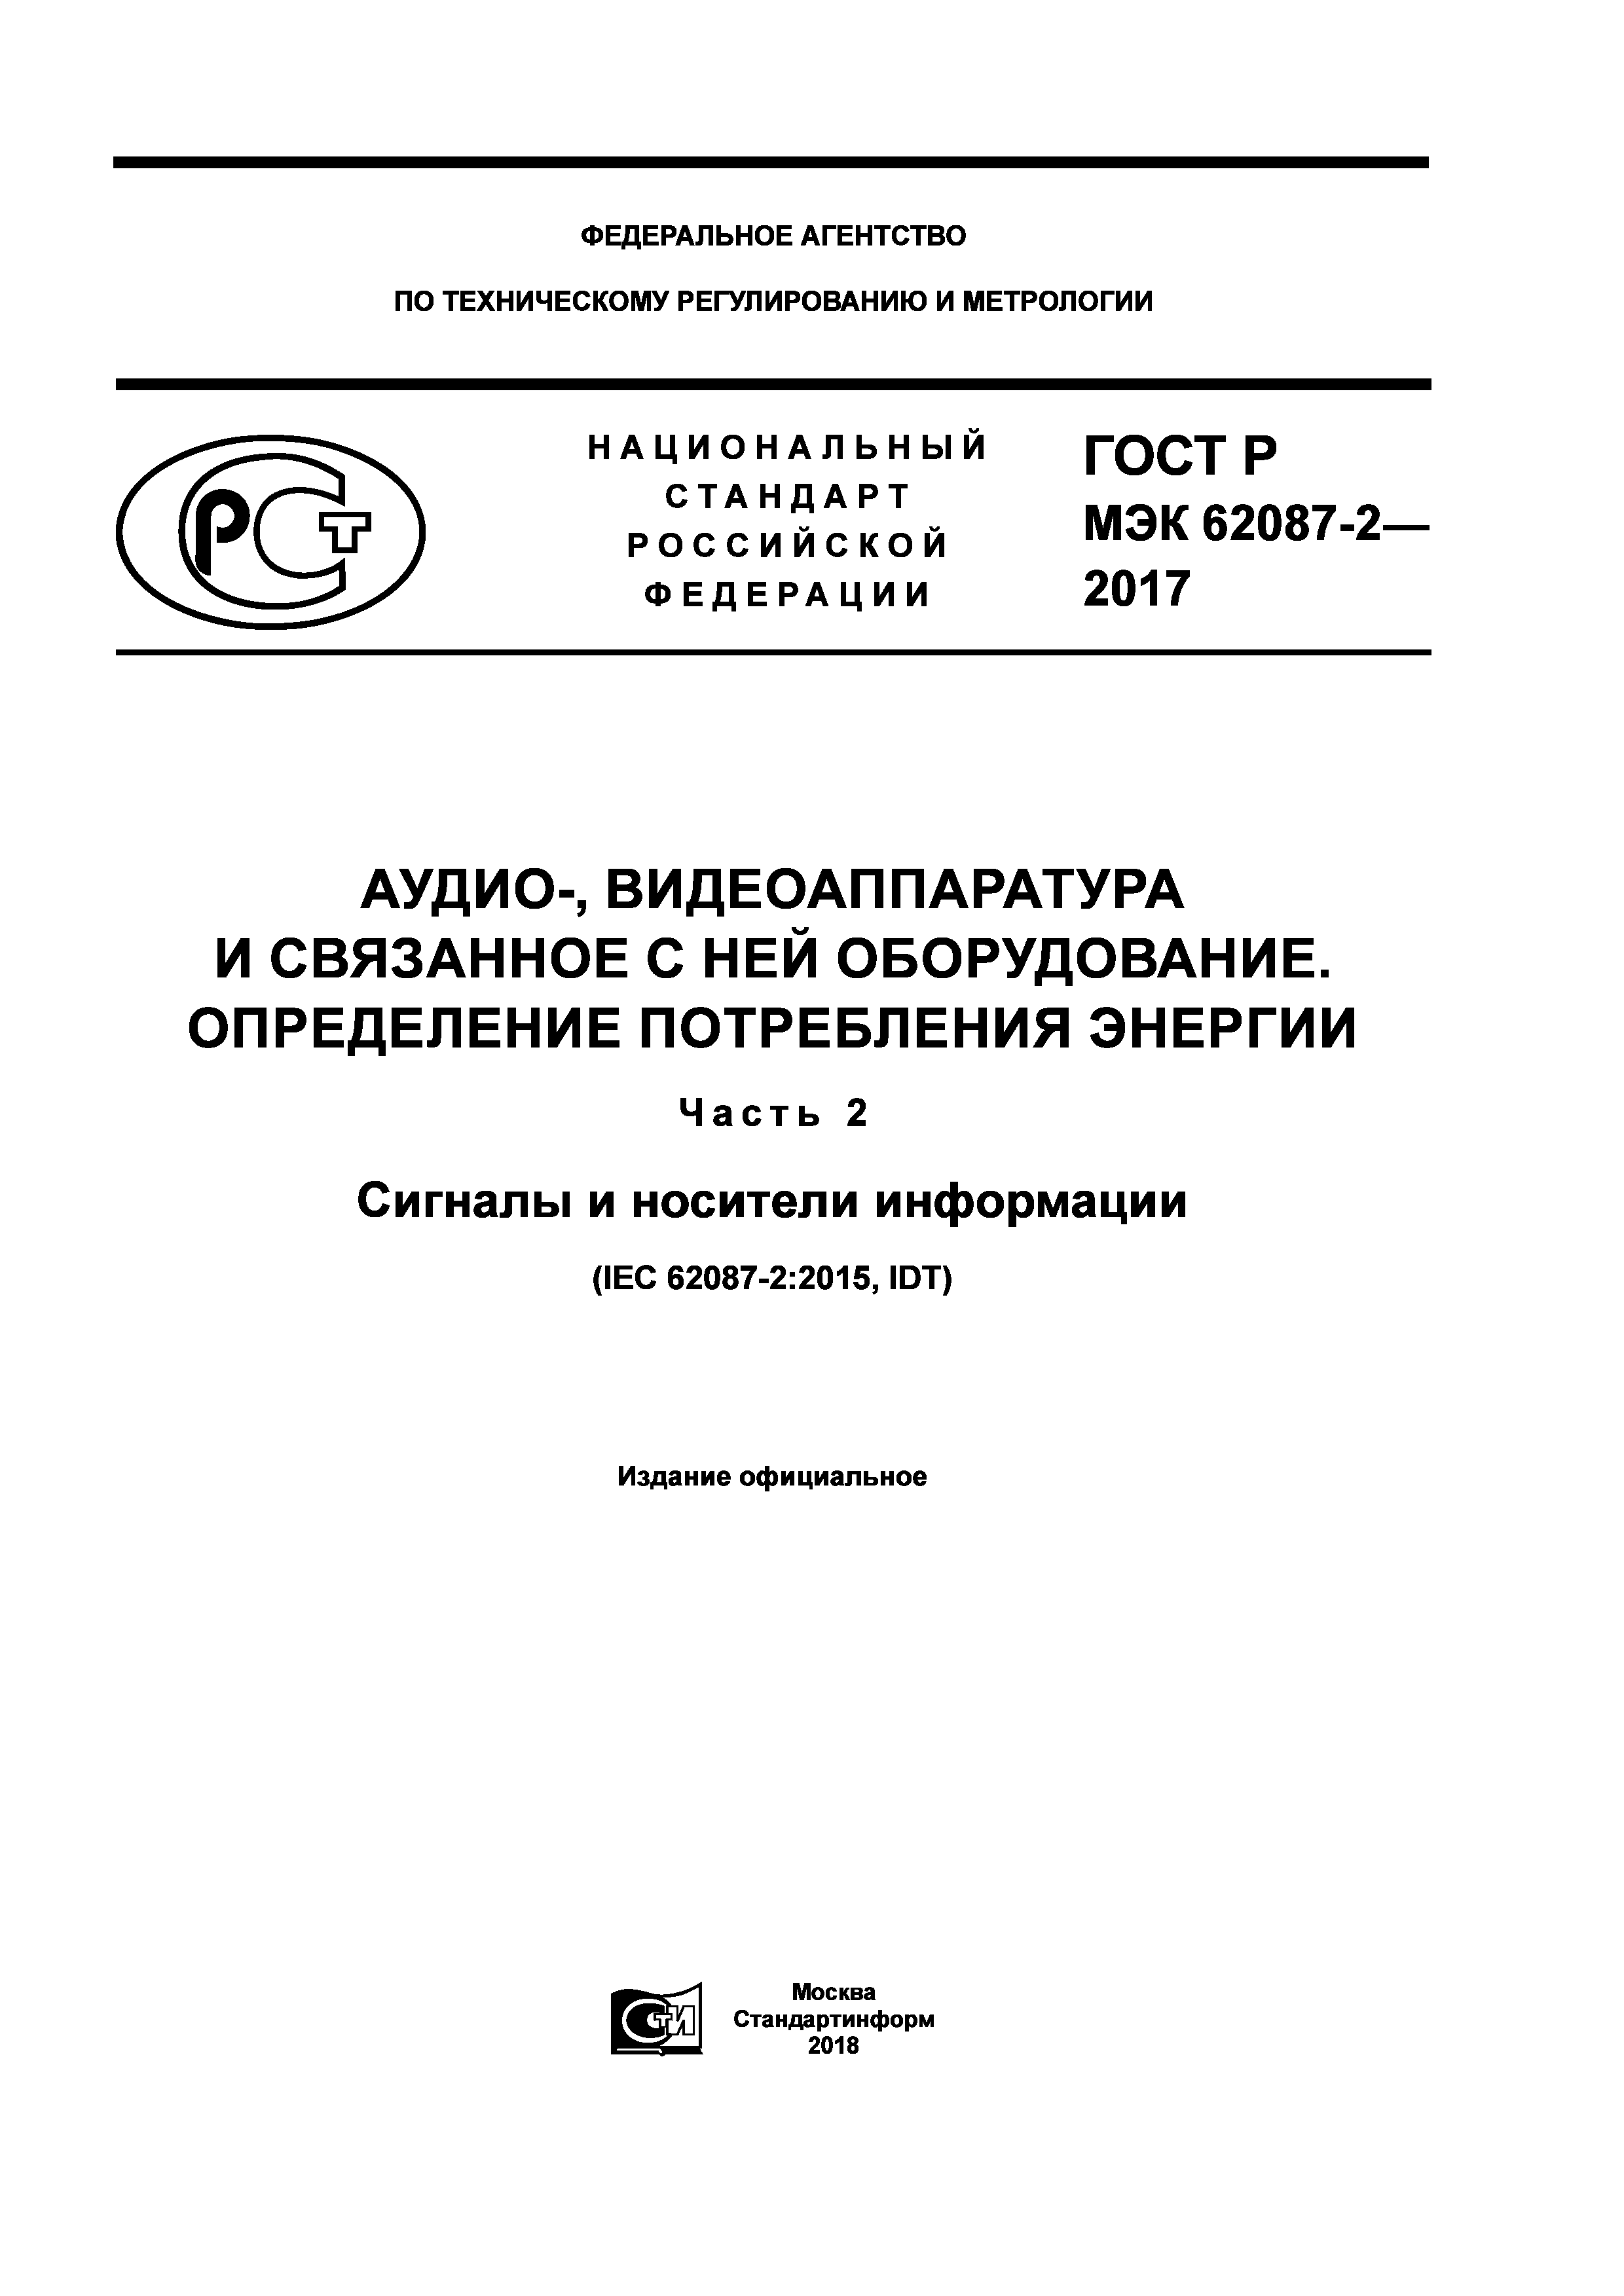 ГОСТ Р МЭК 62087-2-2017